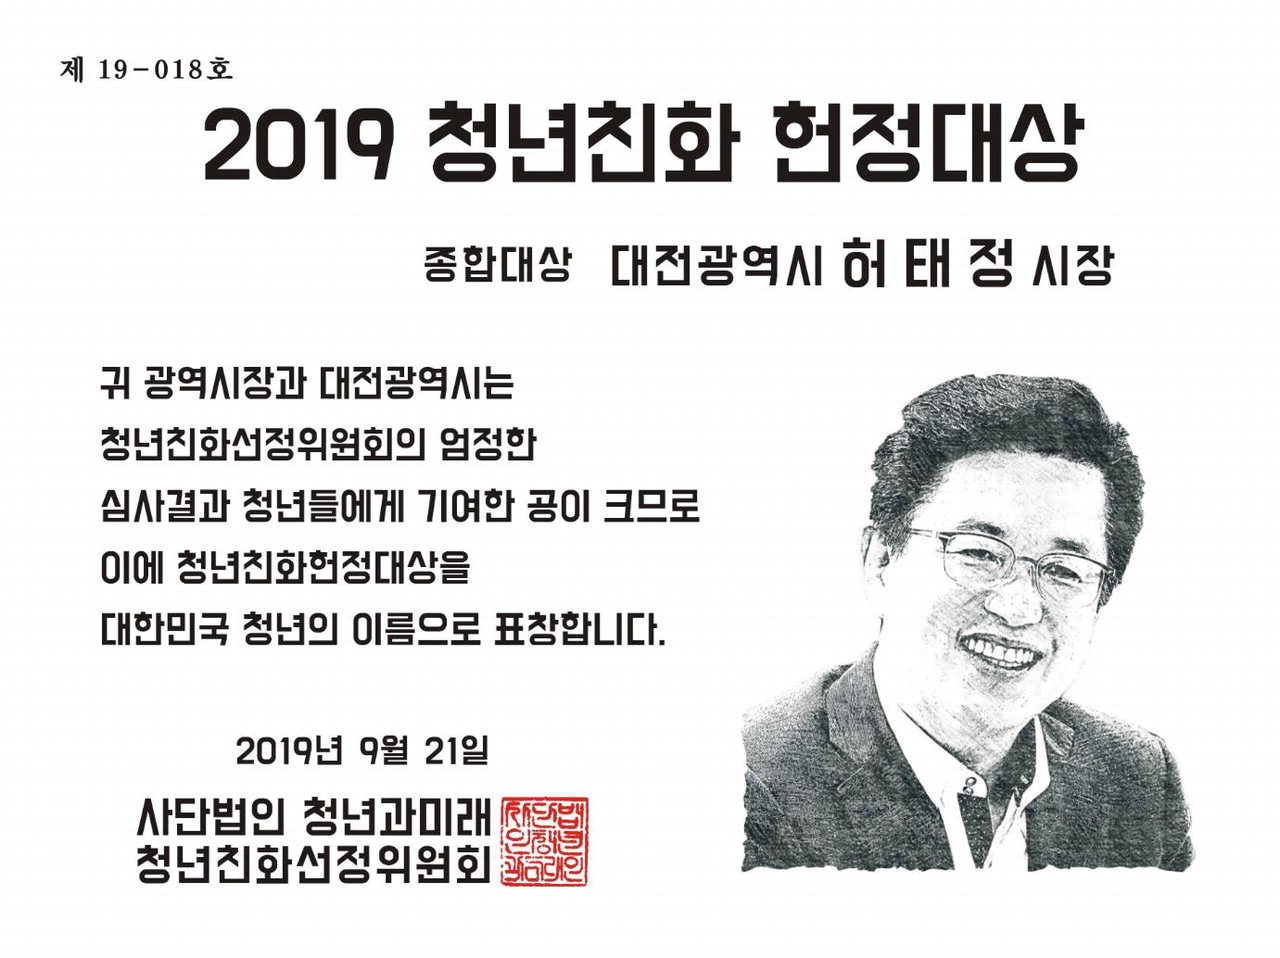 대전시는 지난 21일 서울 여의도공원에서 열린 제3회 대한민국 청년의 날 기념식에서 '2019 청년친화헌정대상 종합대상'을 수상했다.